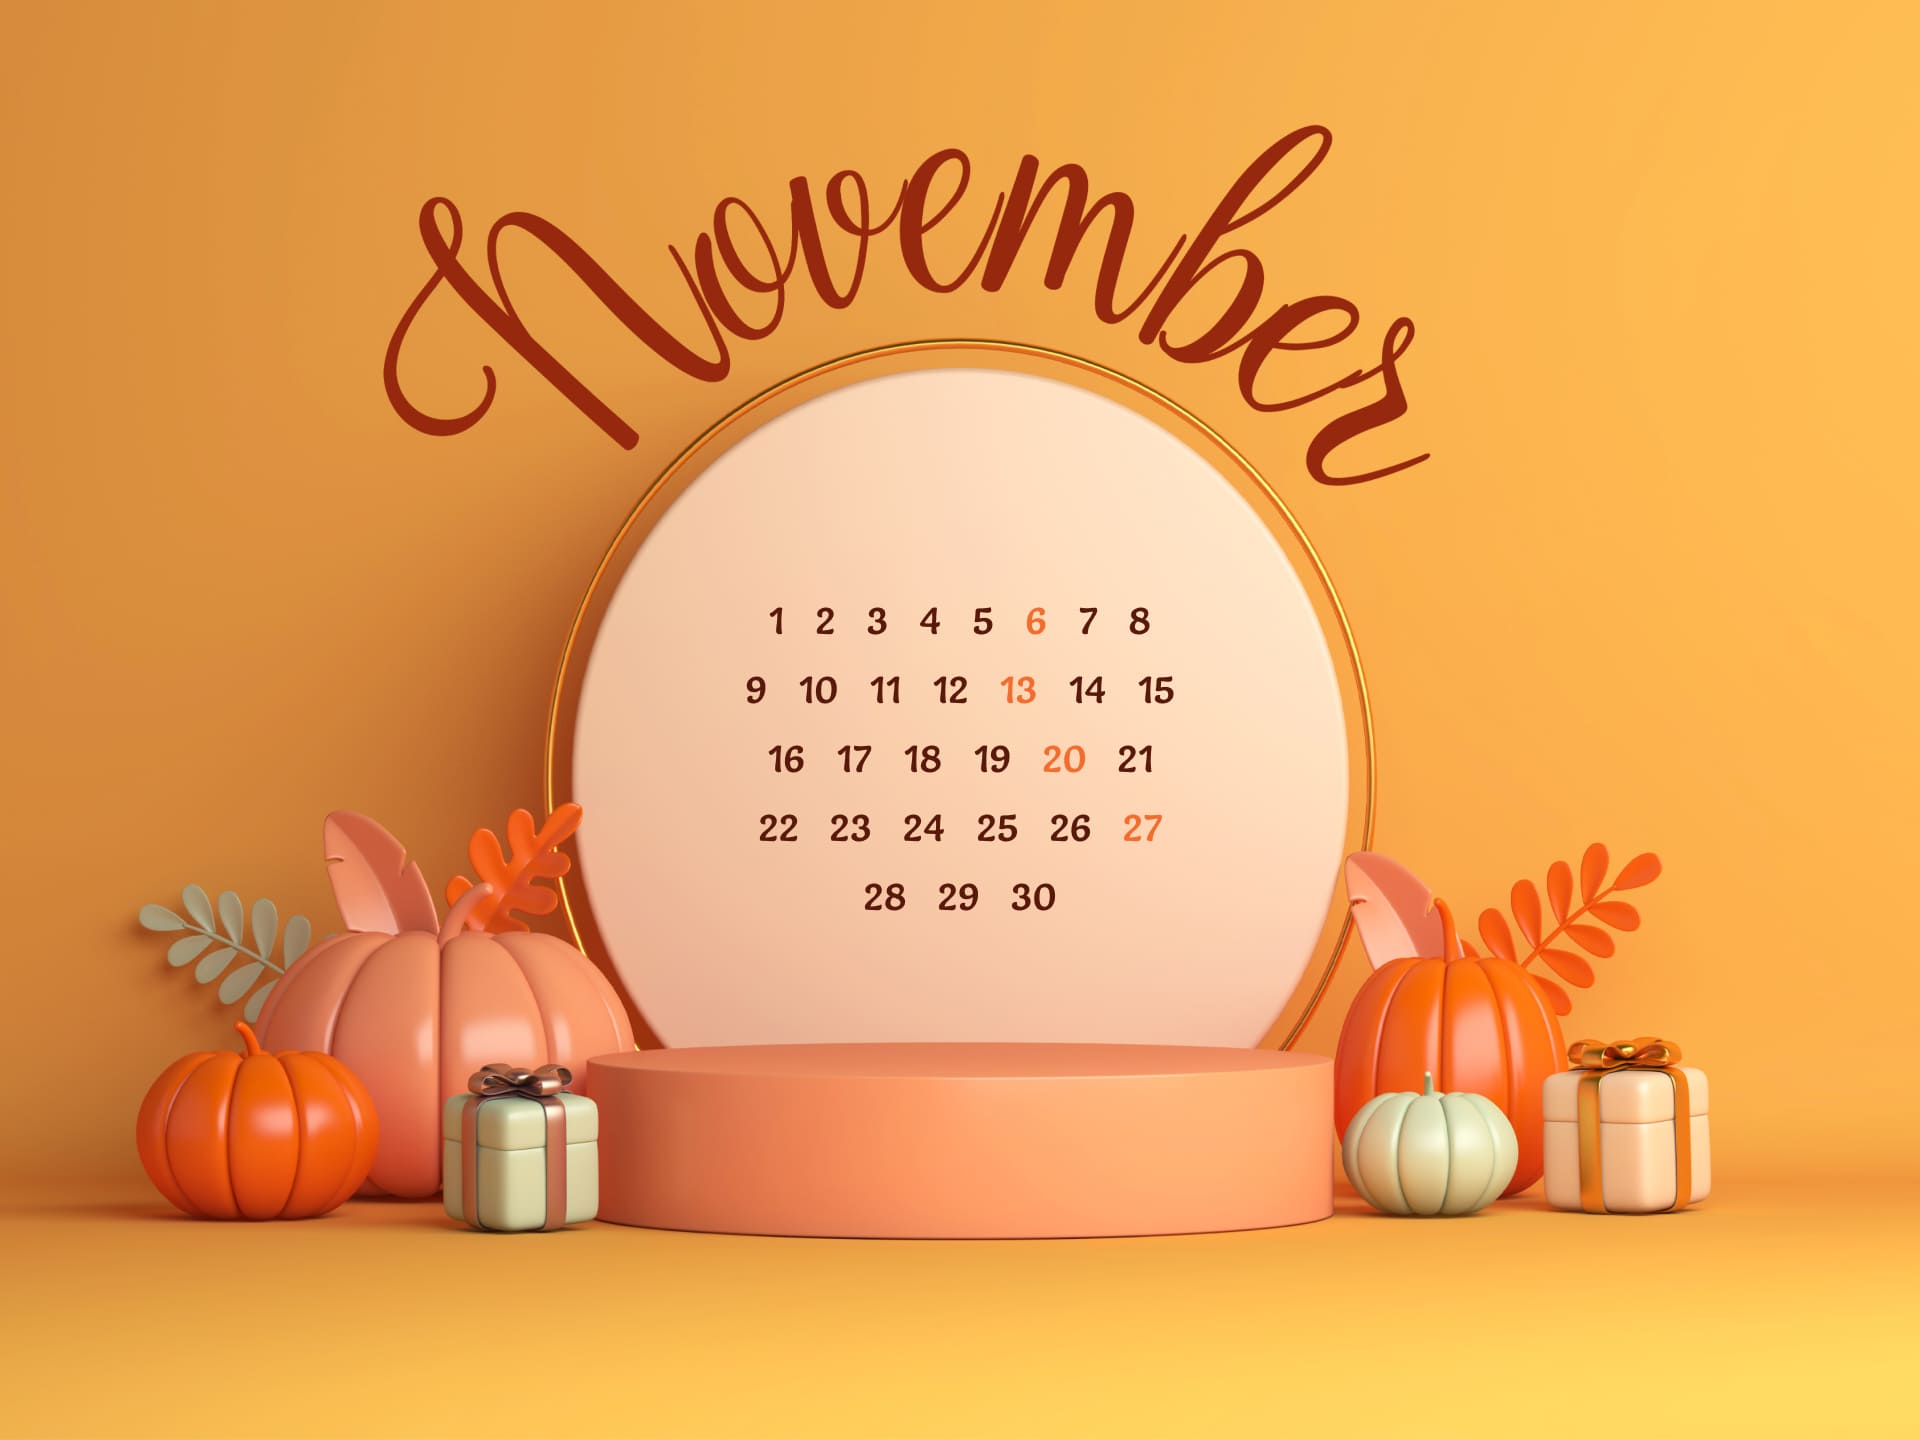 Free November calendar extension 1920х1440.